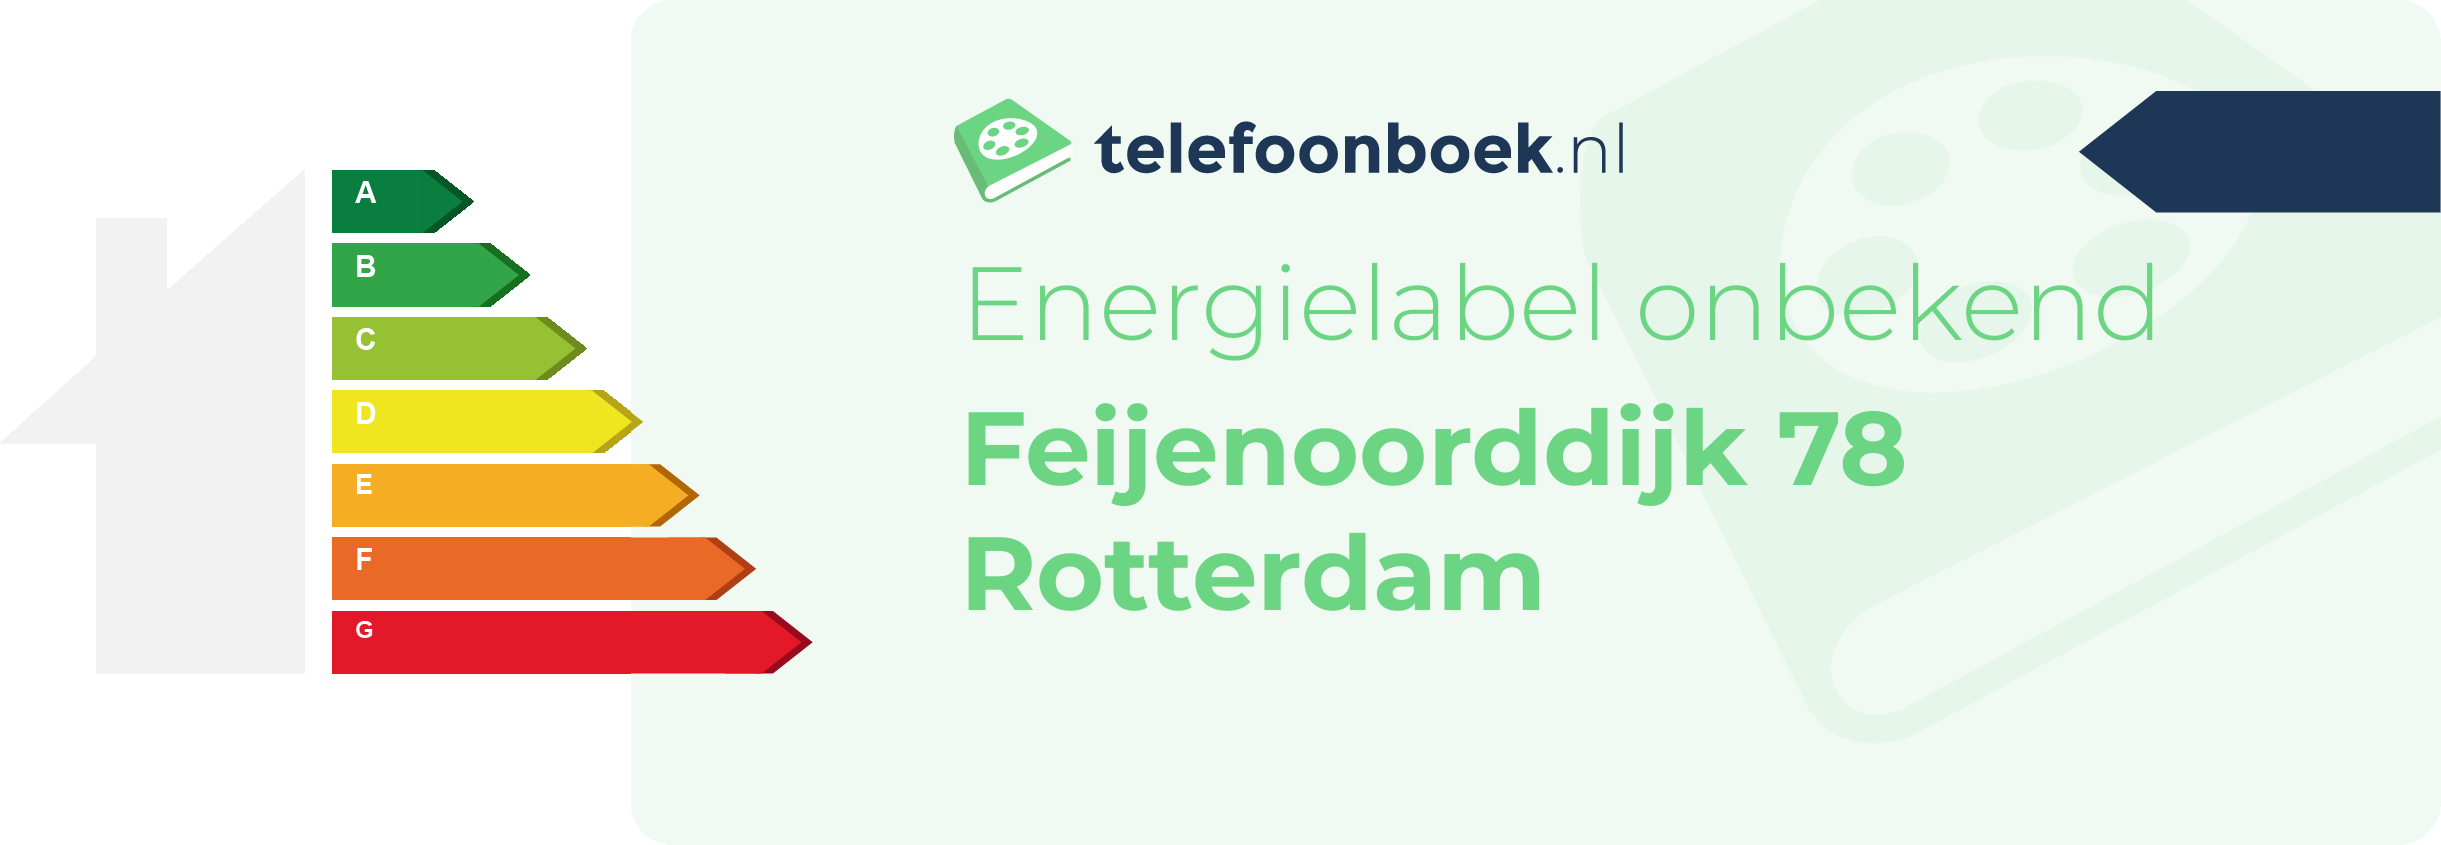 Energielabel Feijenoorddijk 78 Rotterdam